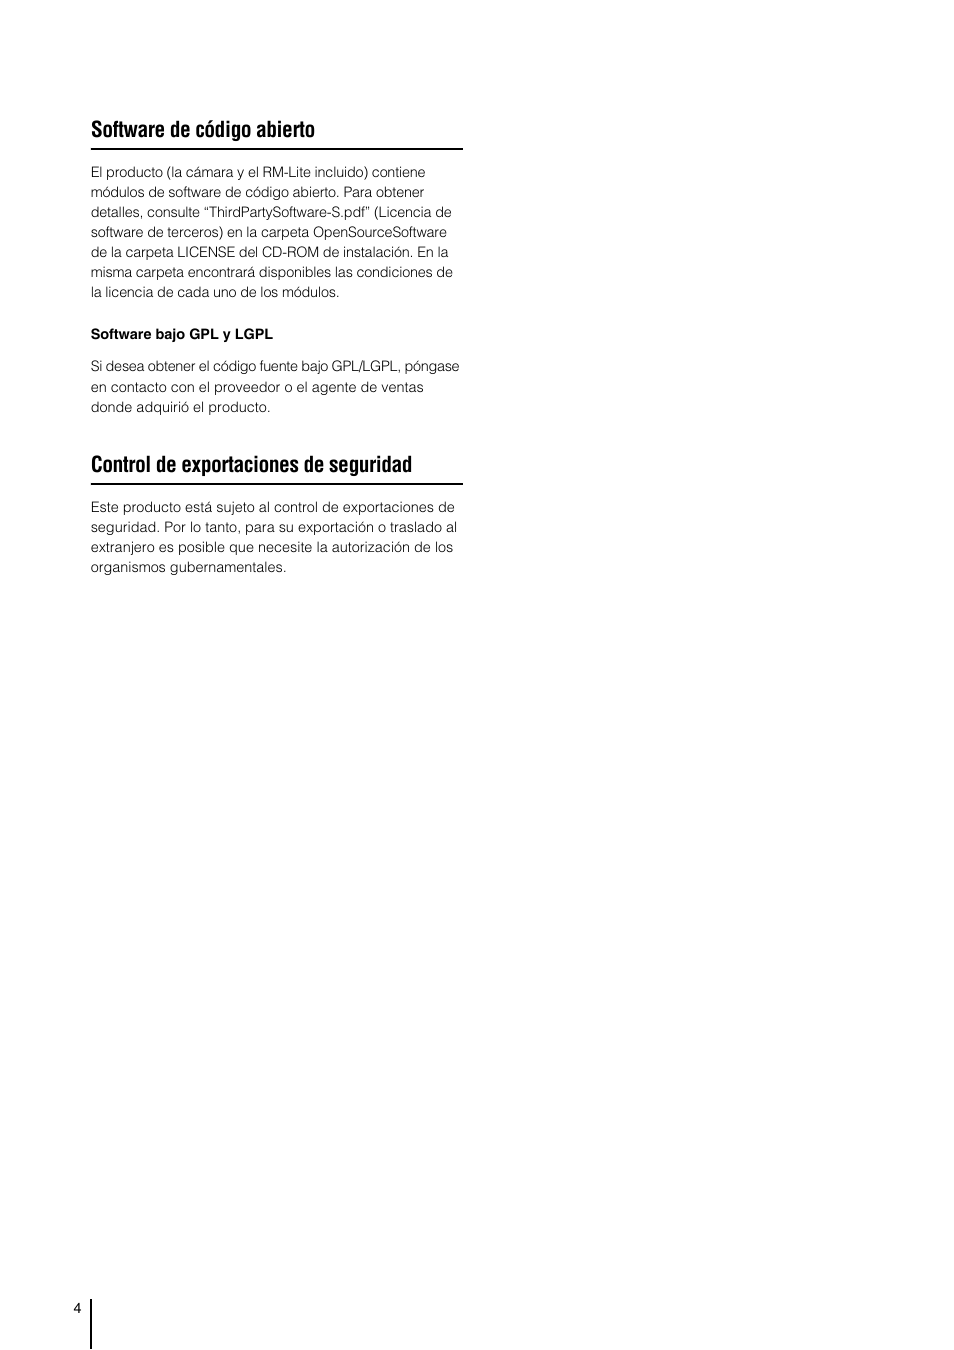 Software de código abierto, Control de exportaciones de seguridad | Canon VB-H41 Manual del usuario | Página 4 / 177